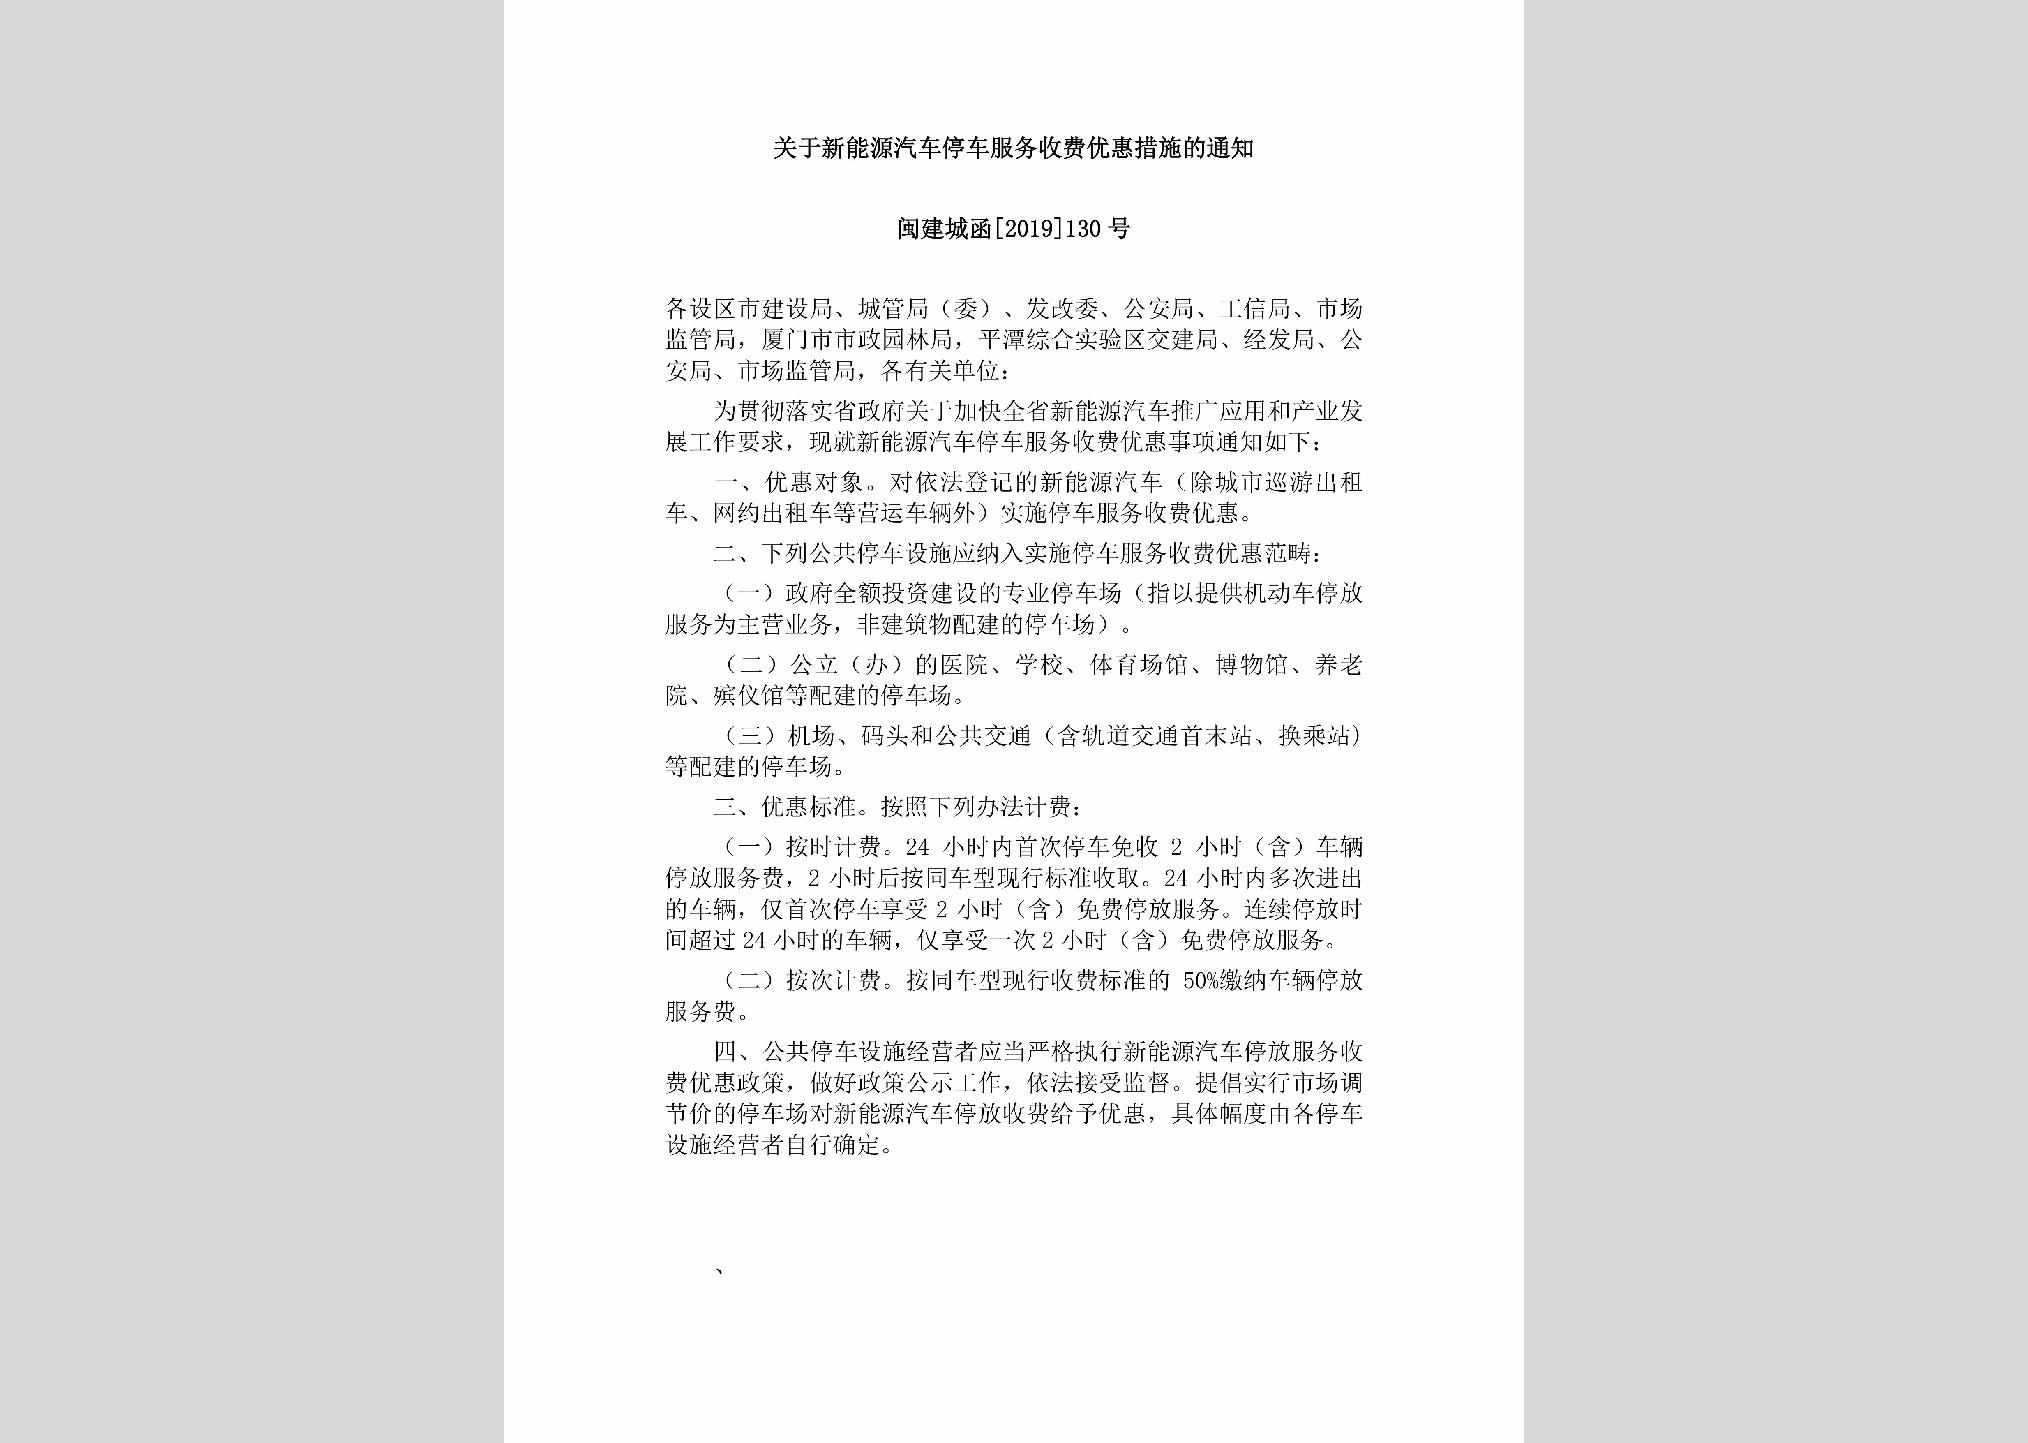 闽建城函[2019]130号：关于新能源汽车停车服务收费优惠措施的通知